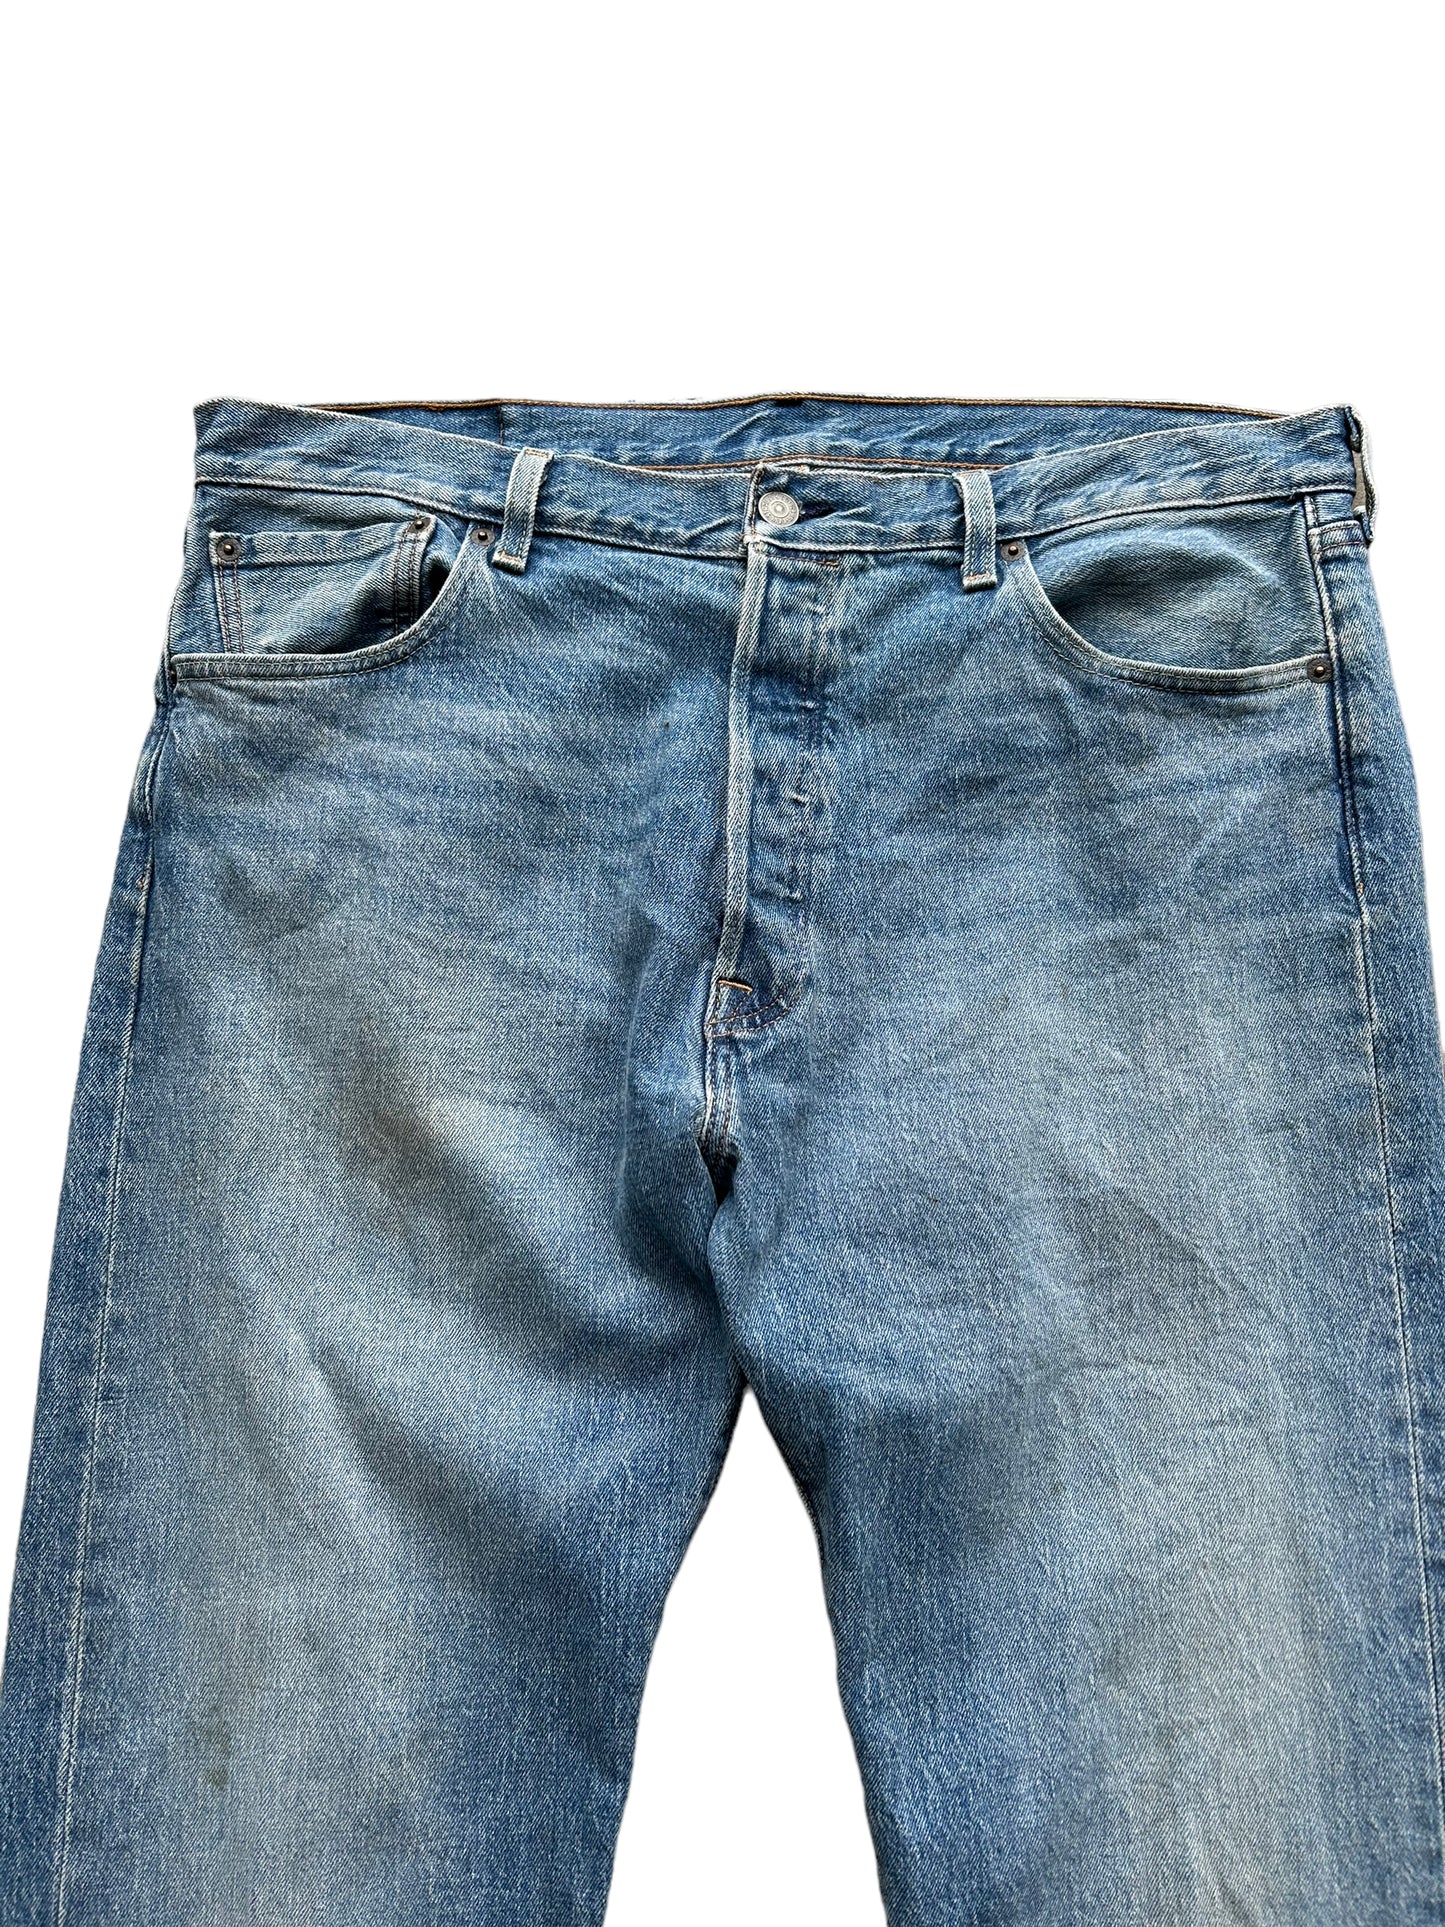 Levis Style 504 Denim Jeans